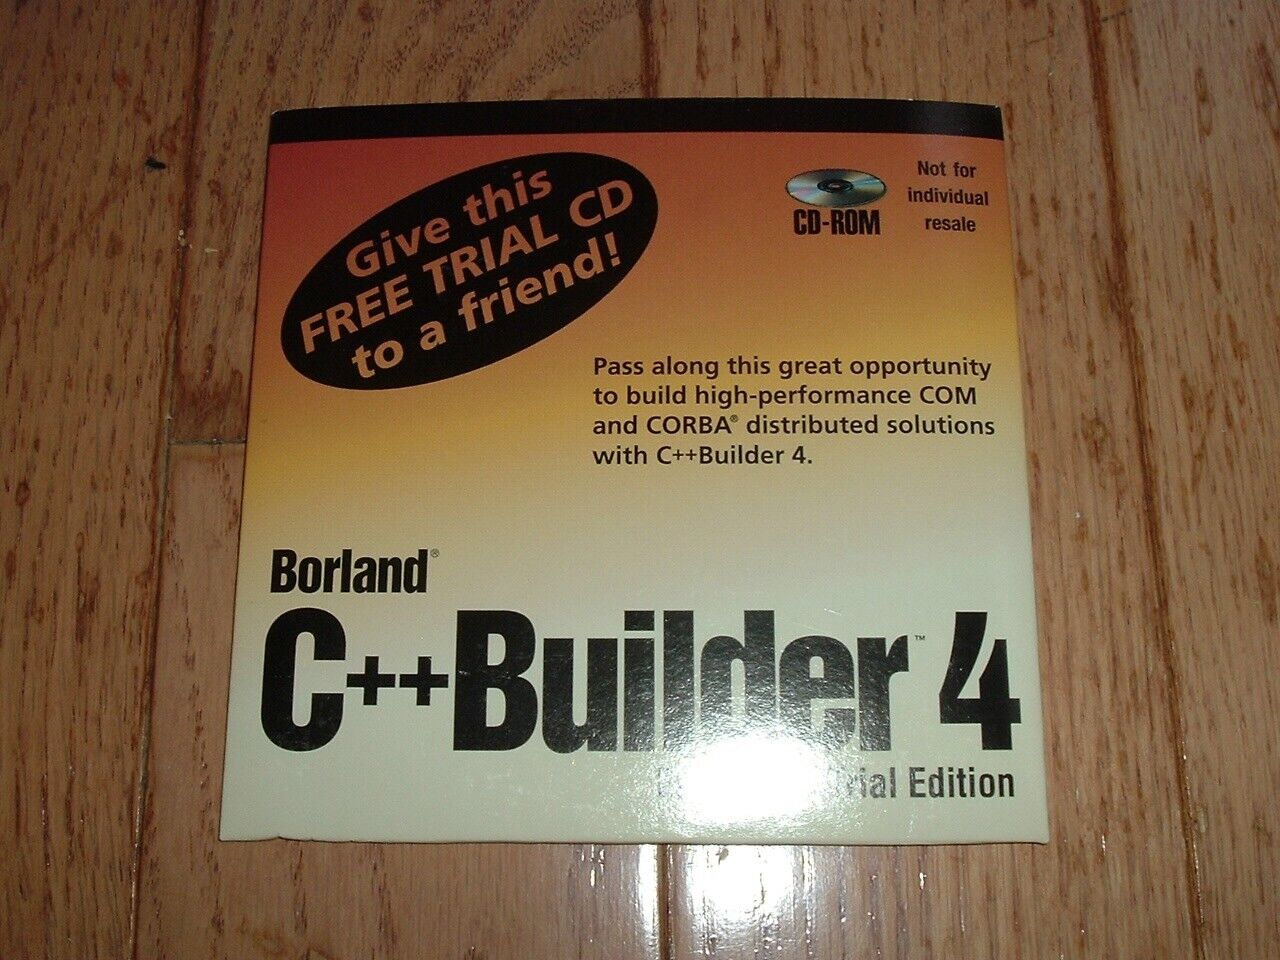 Borland C++ Builder 4 Enterprise Trial disk (Good for limited time)